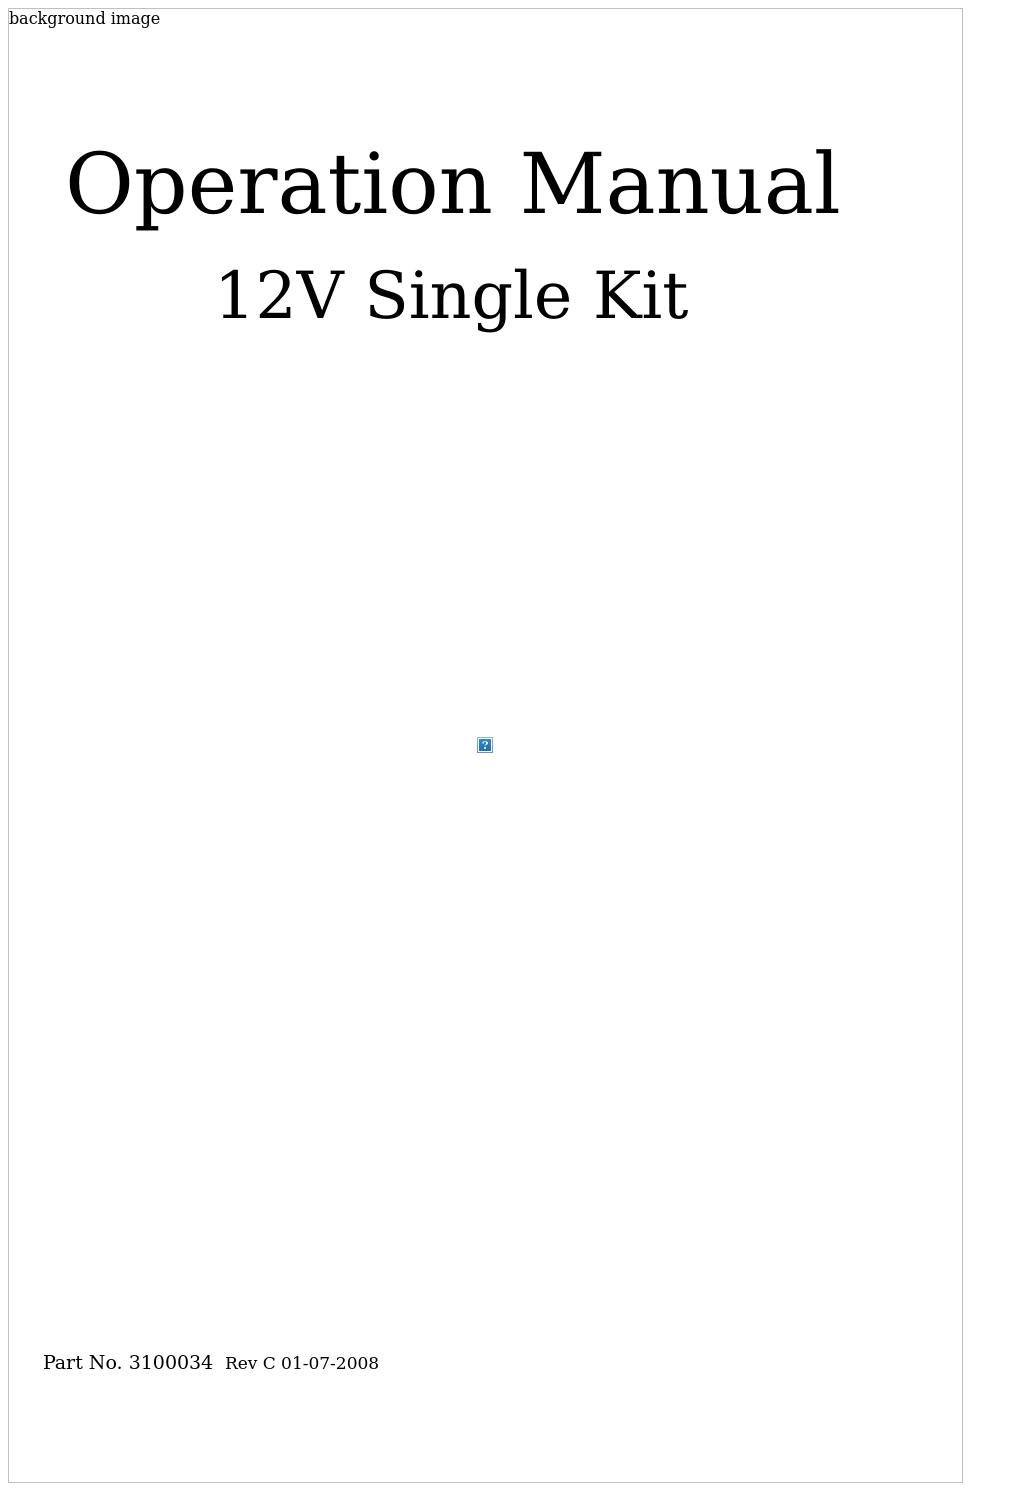 12V Single Kit